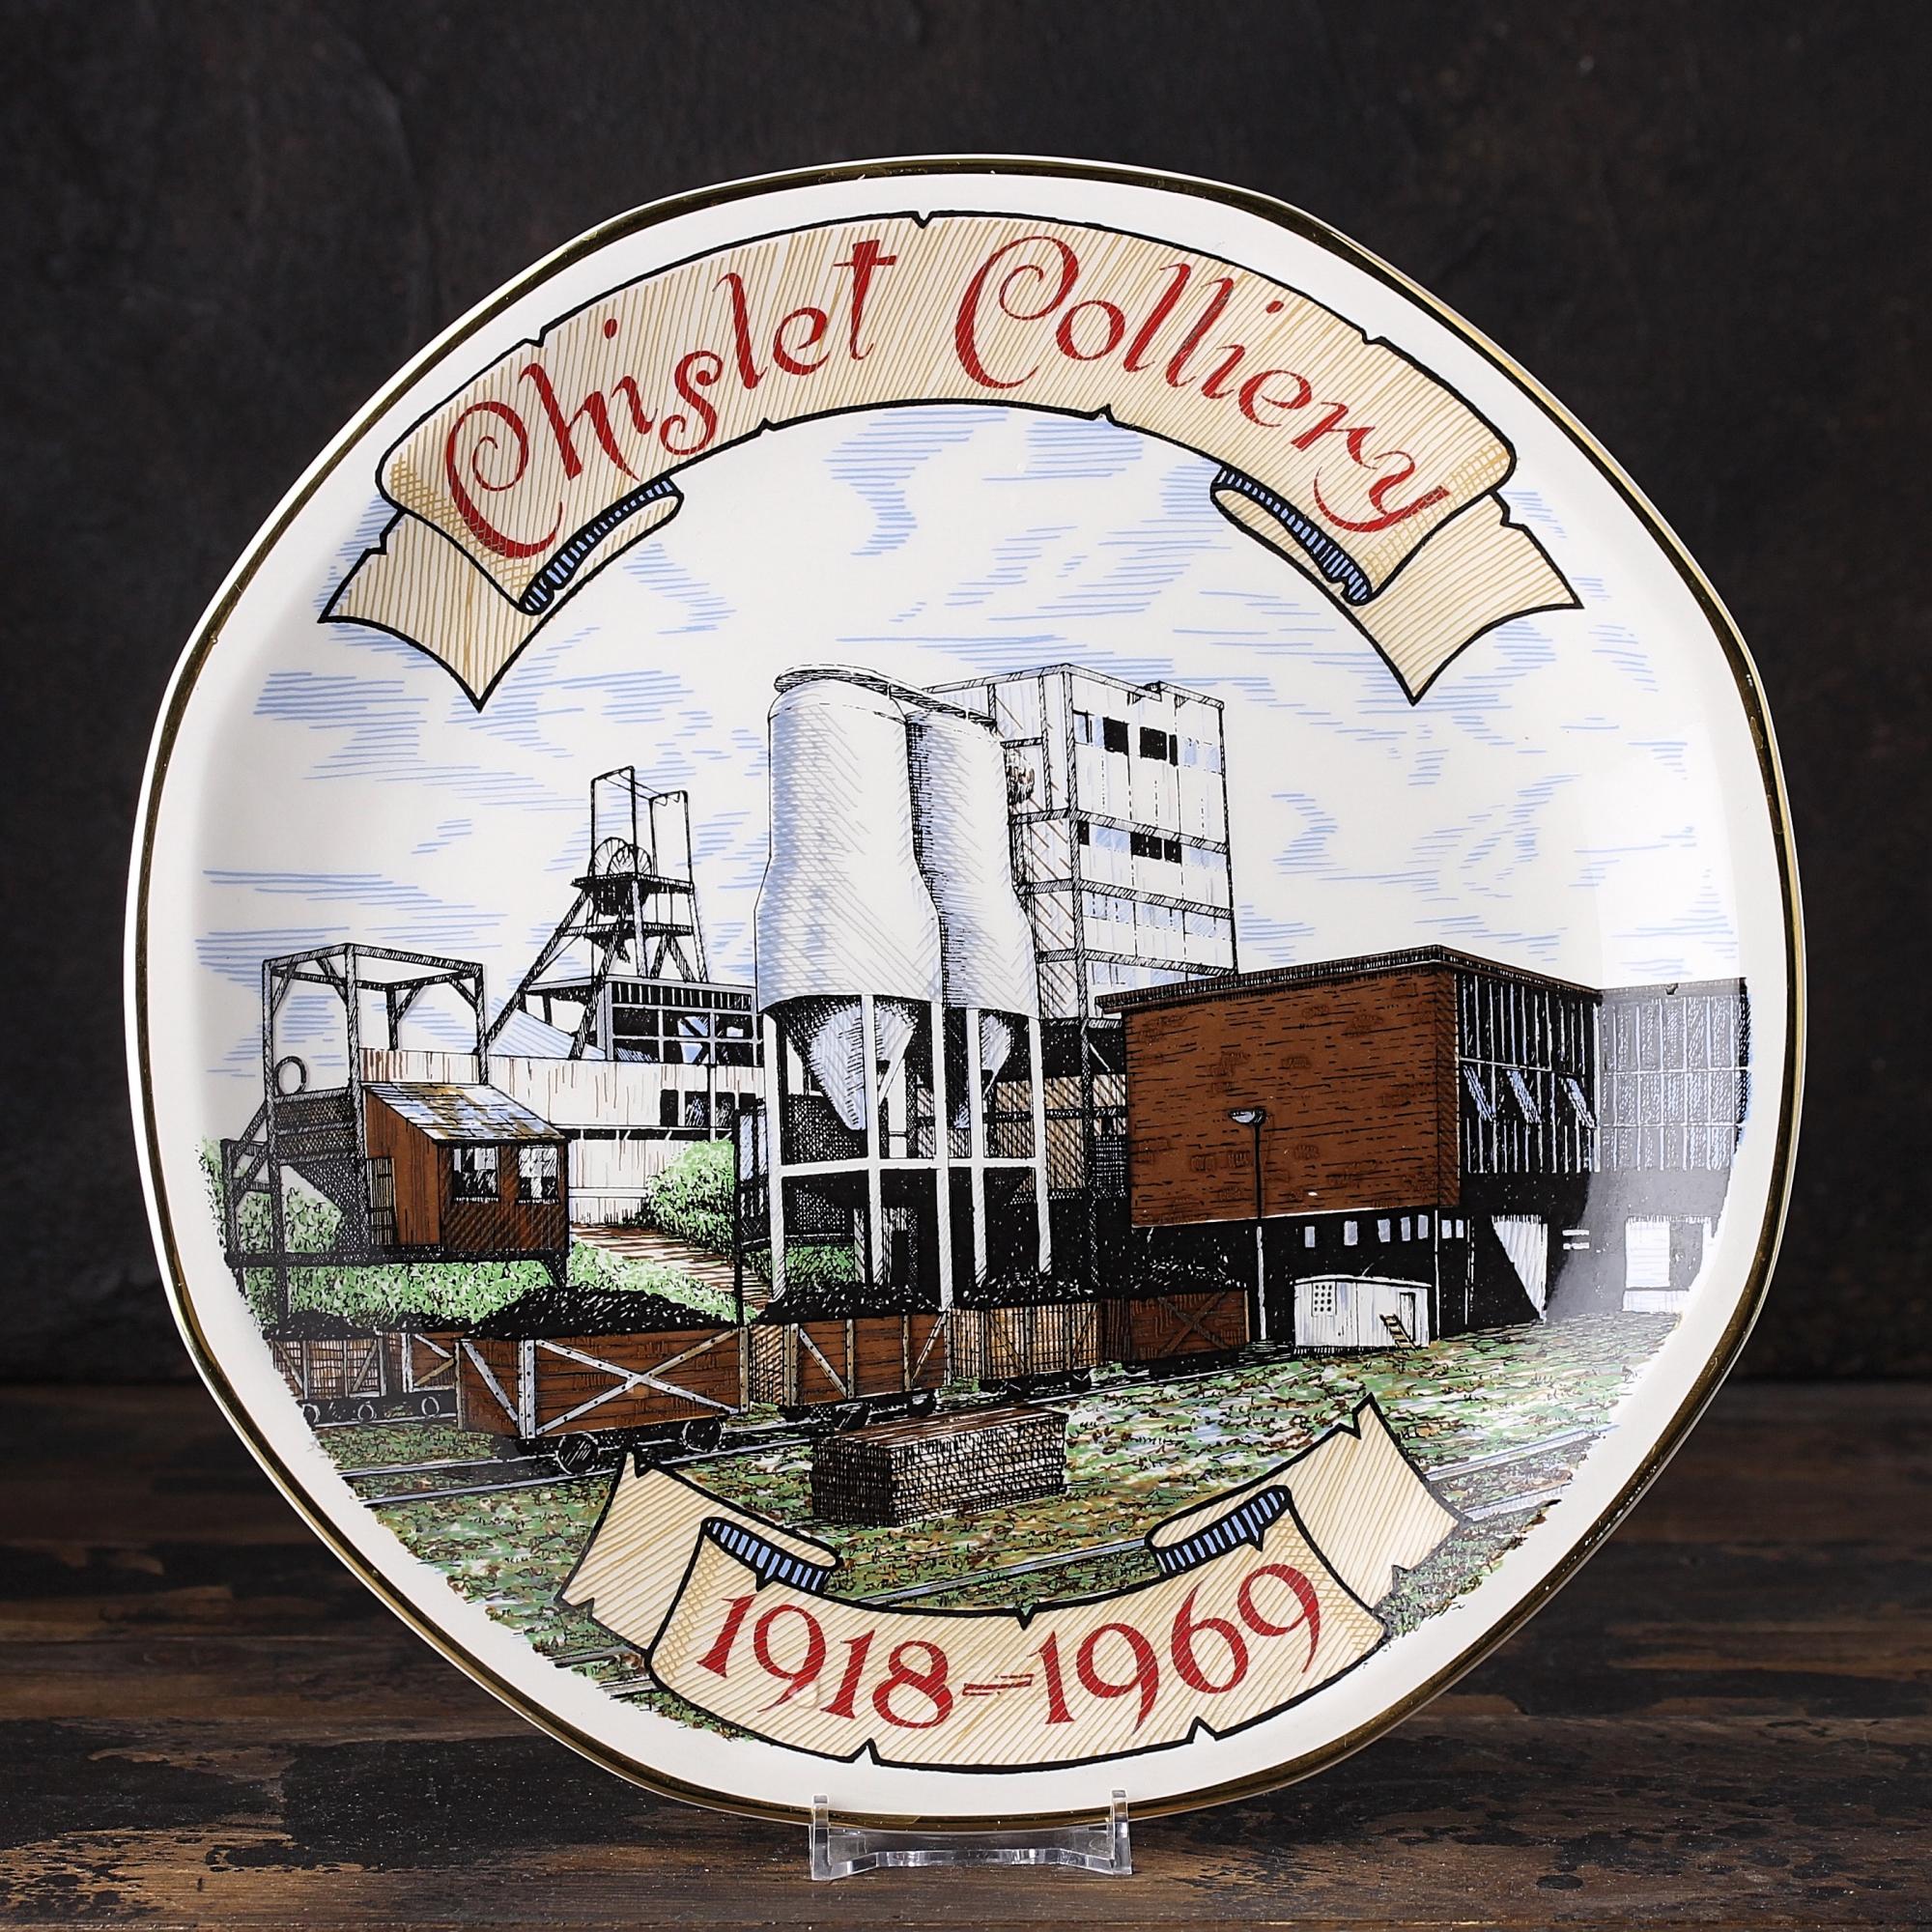 Винтажная декоративная тарелка "Chislet Colliery 1918-1969" Угольная шахта в Числет